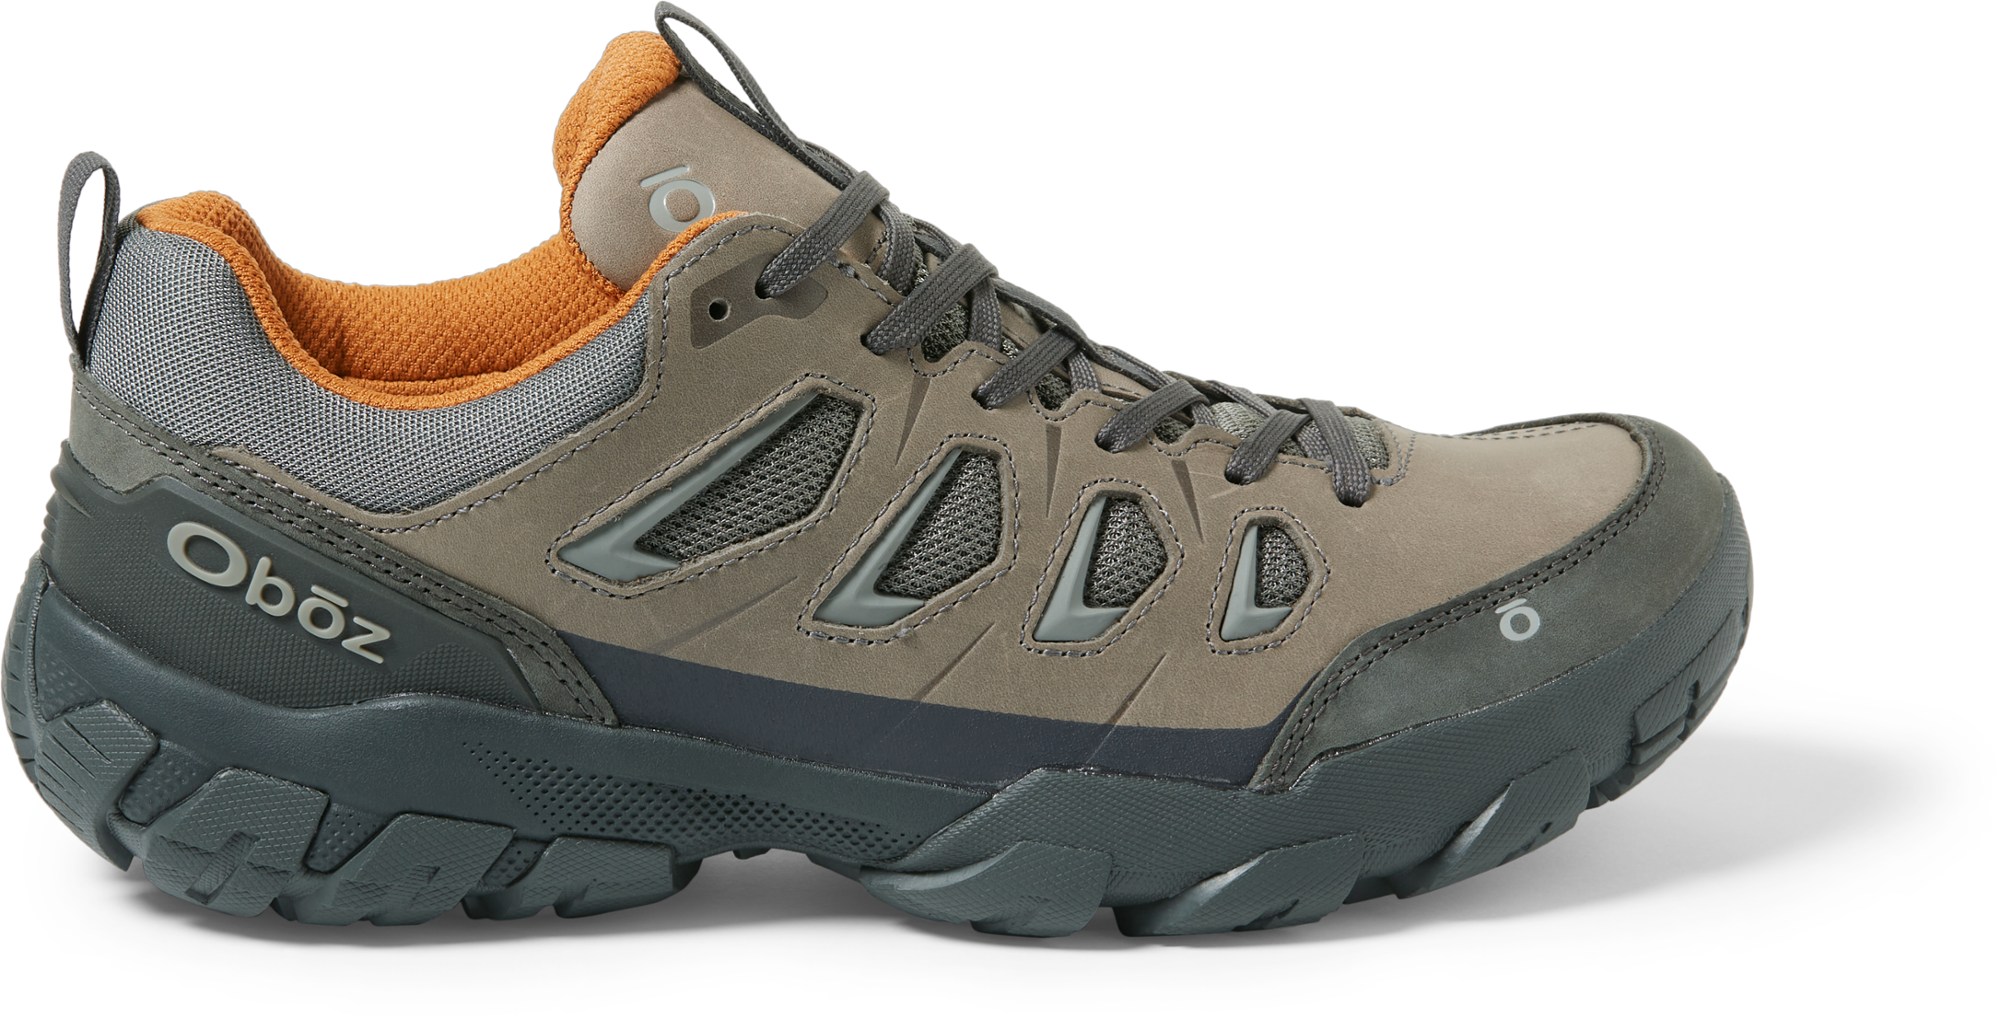 Низкие походные мужские ботинки Oboz Sawtooth X, серый кроссовки sawtooth x mid oboz камнепад